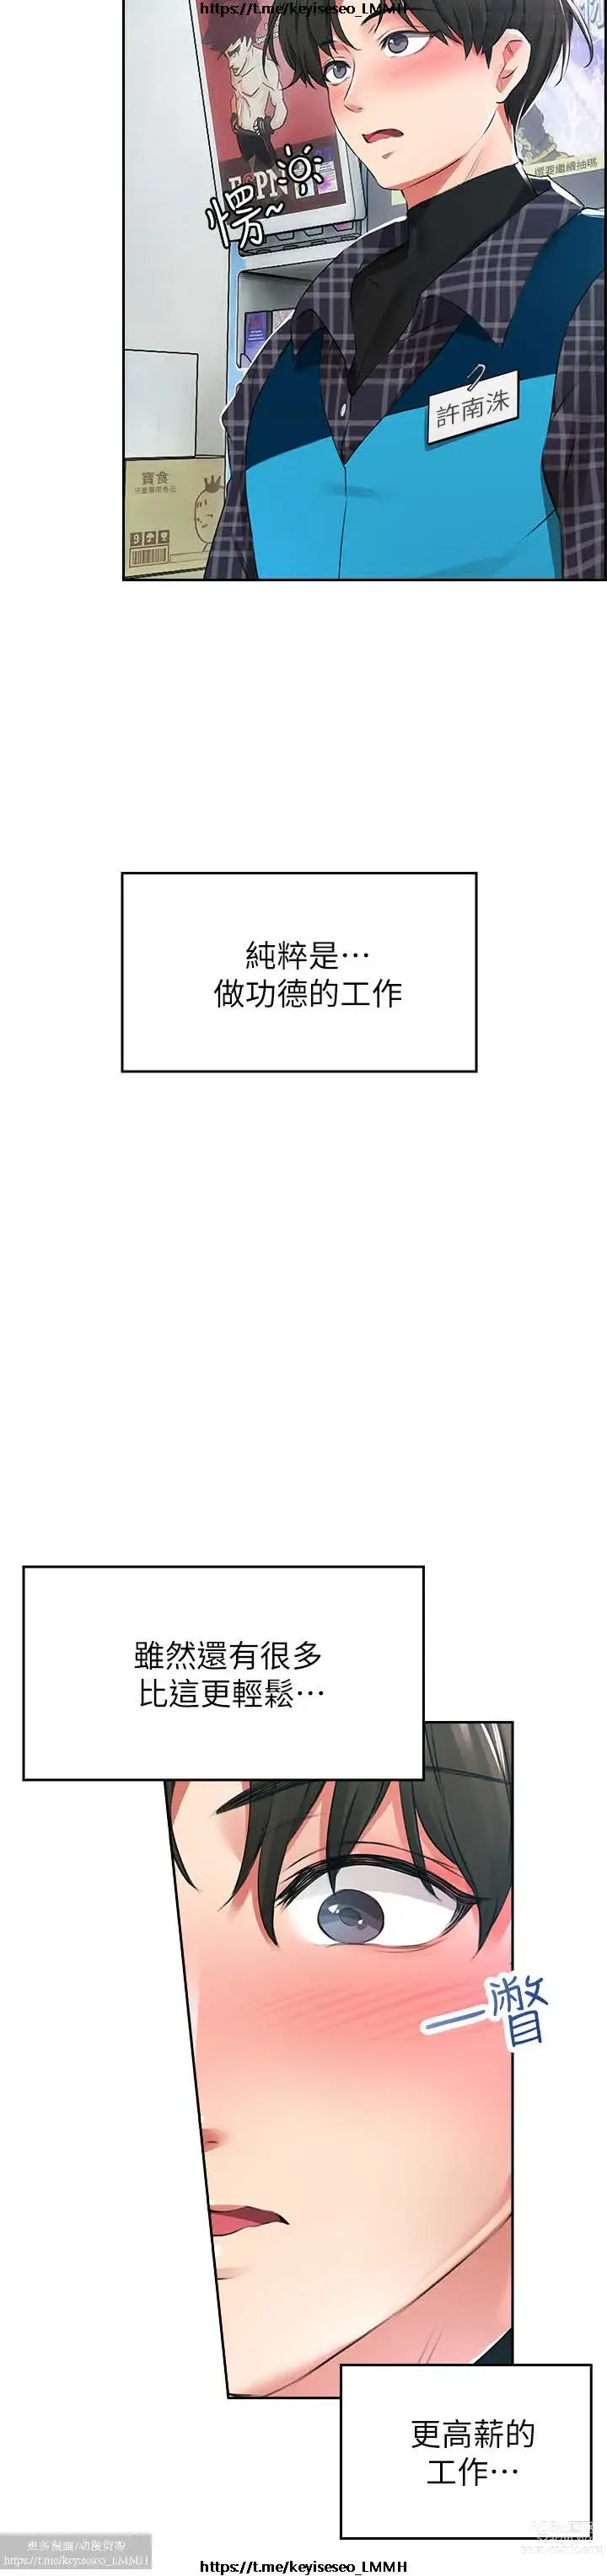 Page 4 of manga 小心你后面 1-24 完结